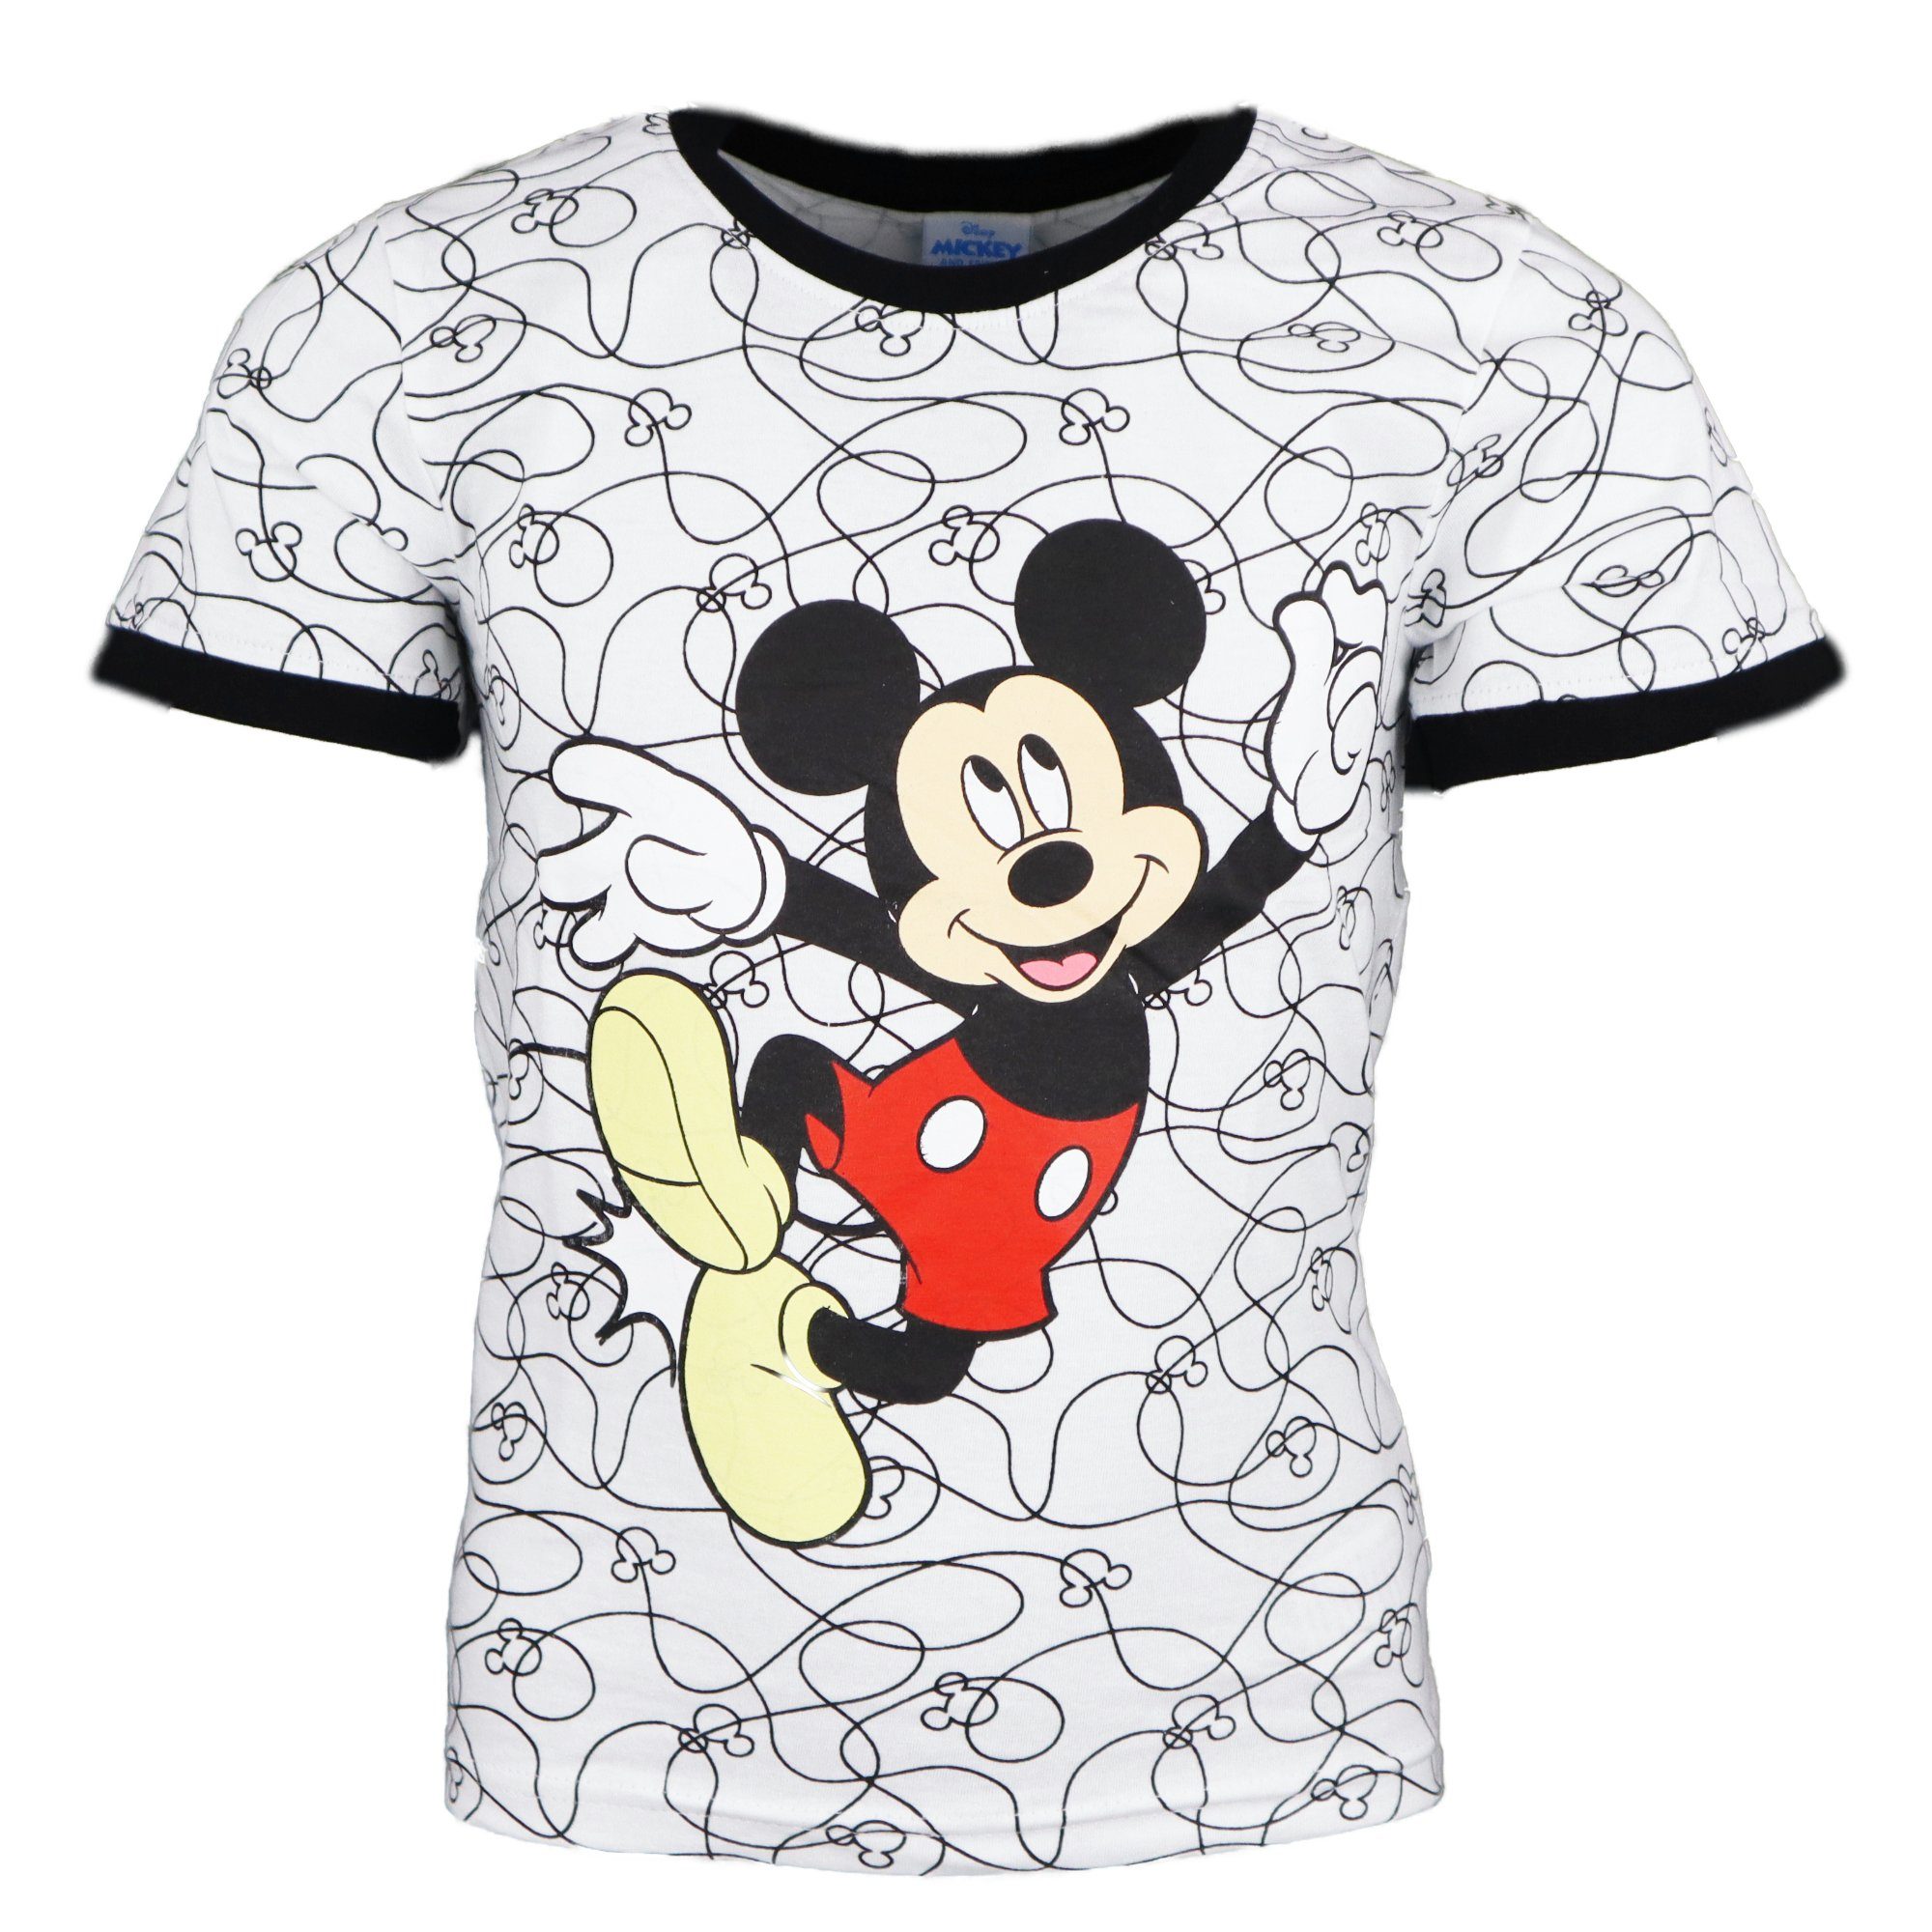 kurzarm T-Shirt Gr. bis Mickey Baumwolle Print-Shirt Mickey 128, 98 Mouse Kinder Maus Disney Jungen 100%